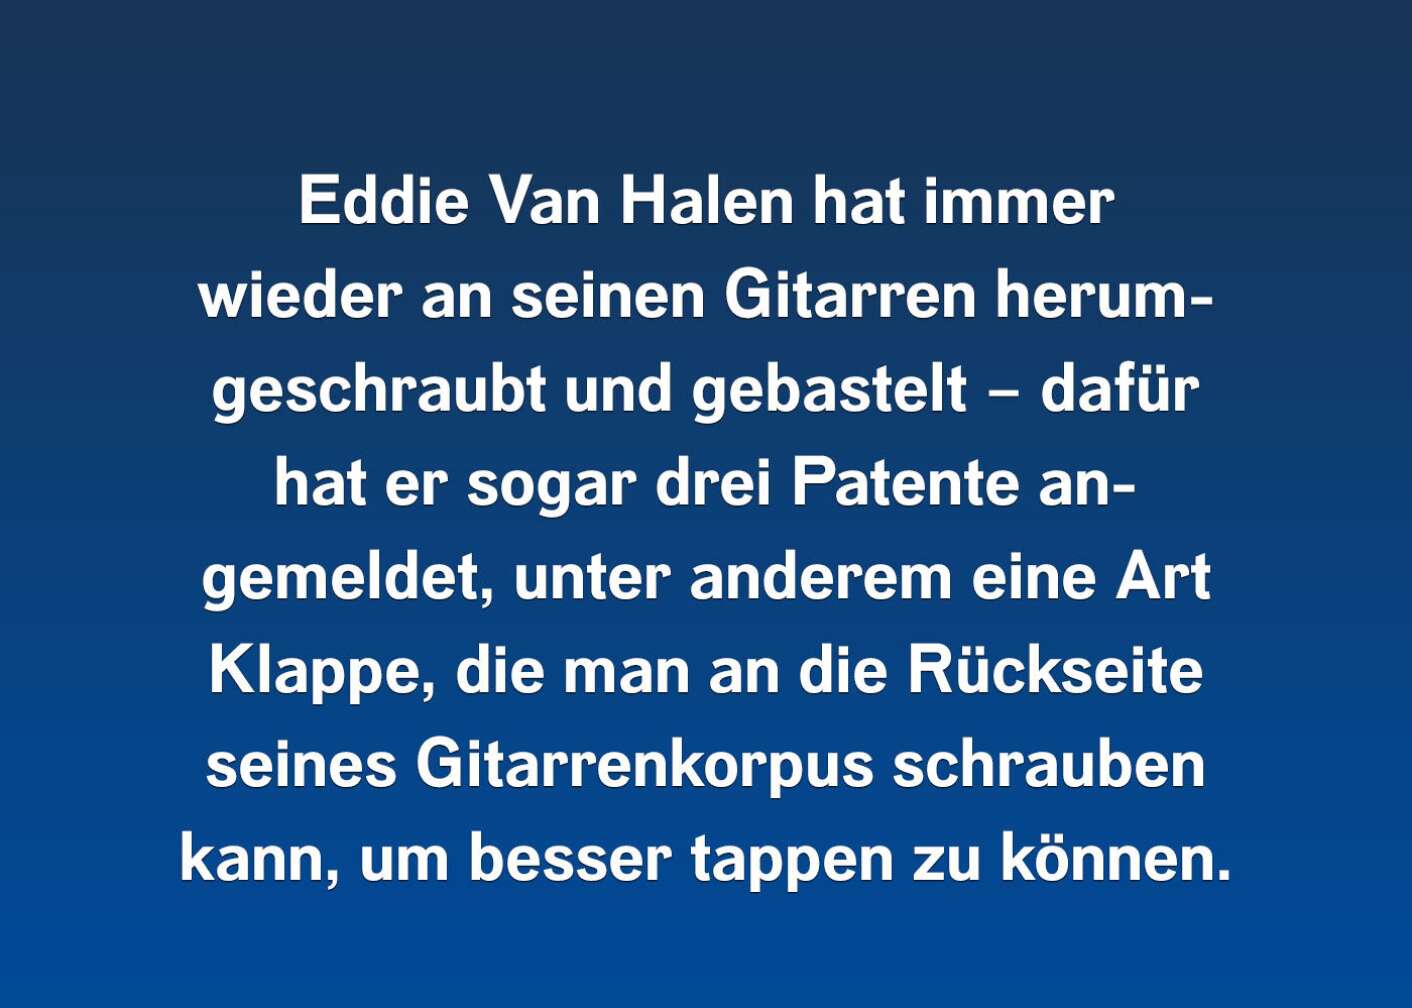 10 Fakten über Eddie Van Halen